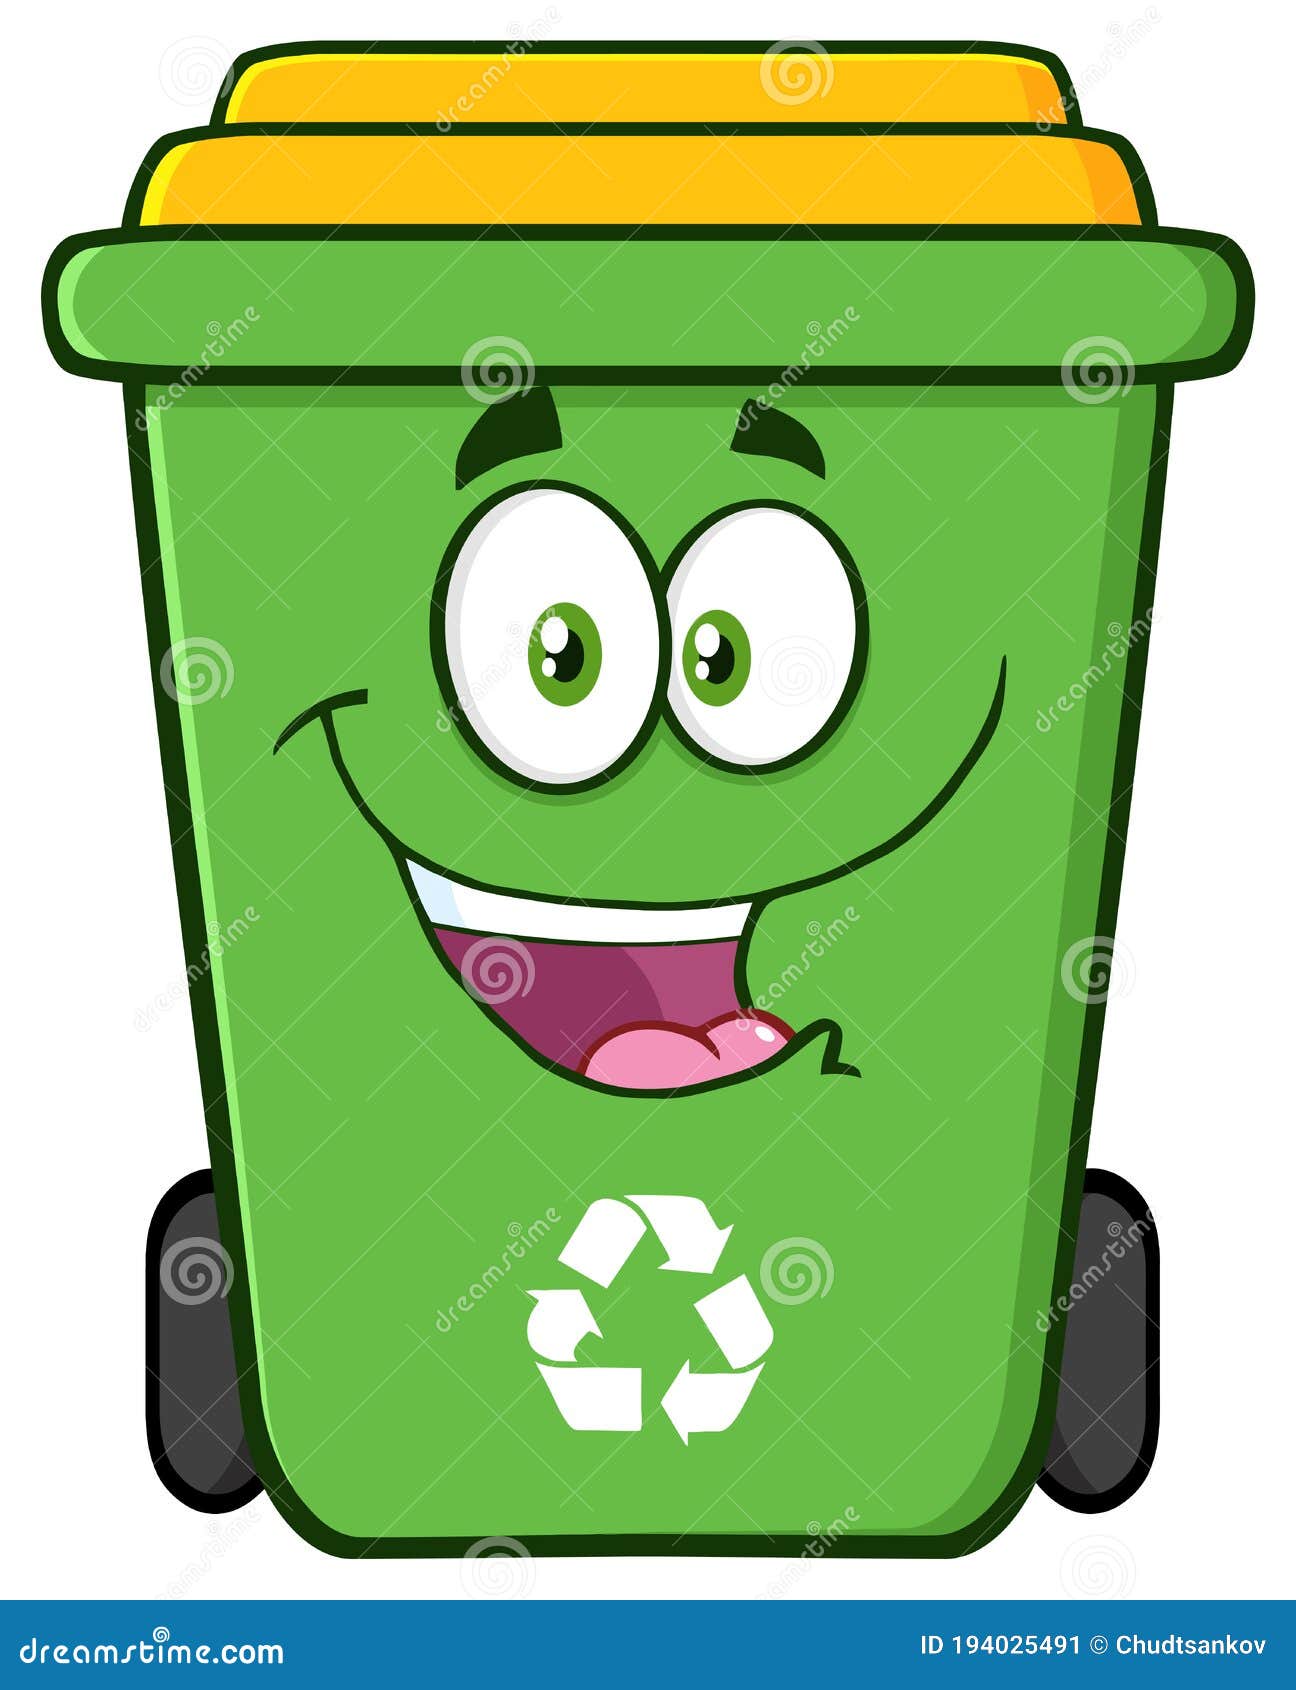 Personaje De Dibujos Animados De La Papelera De Reciclaje Verde Feliz Stock  de ilustración - Ilustración de feliz, historieta: 194025491